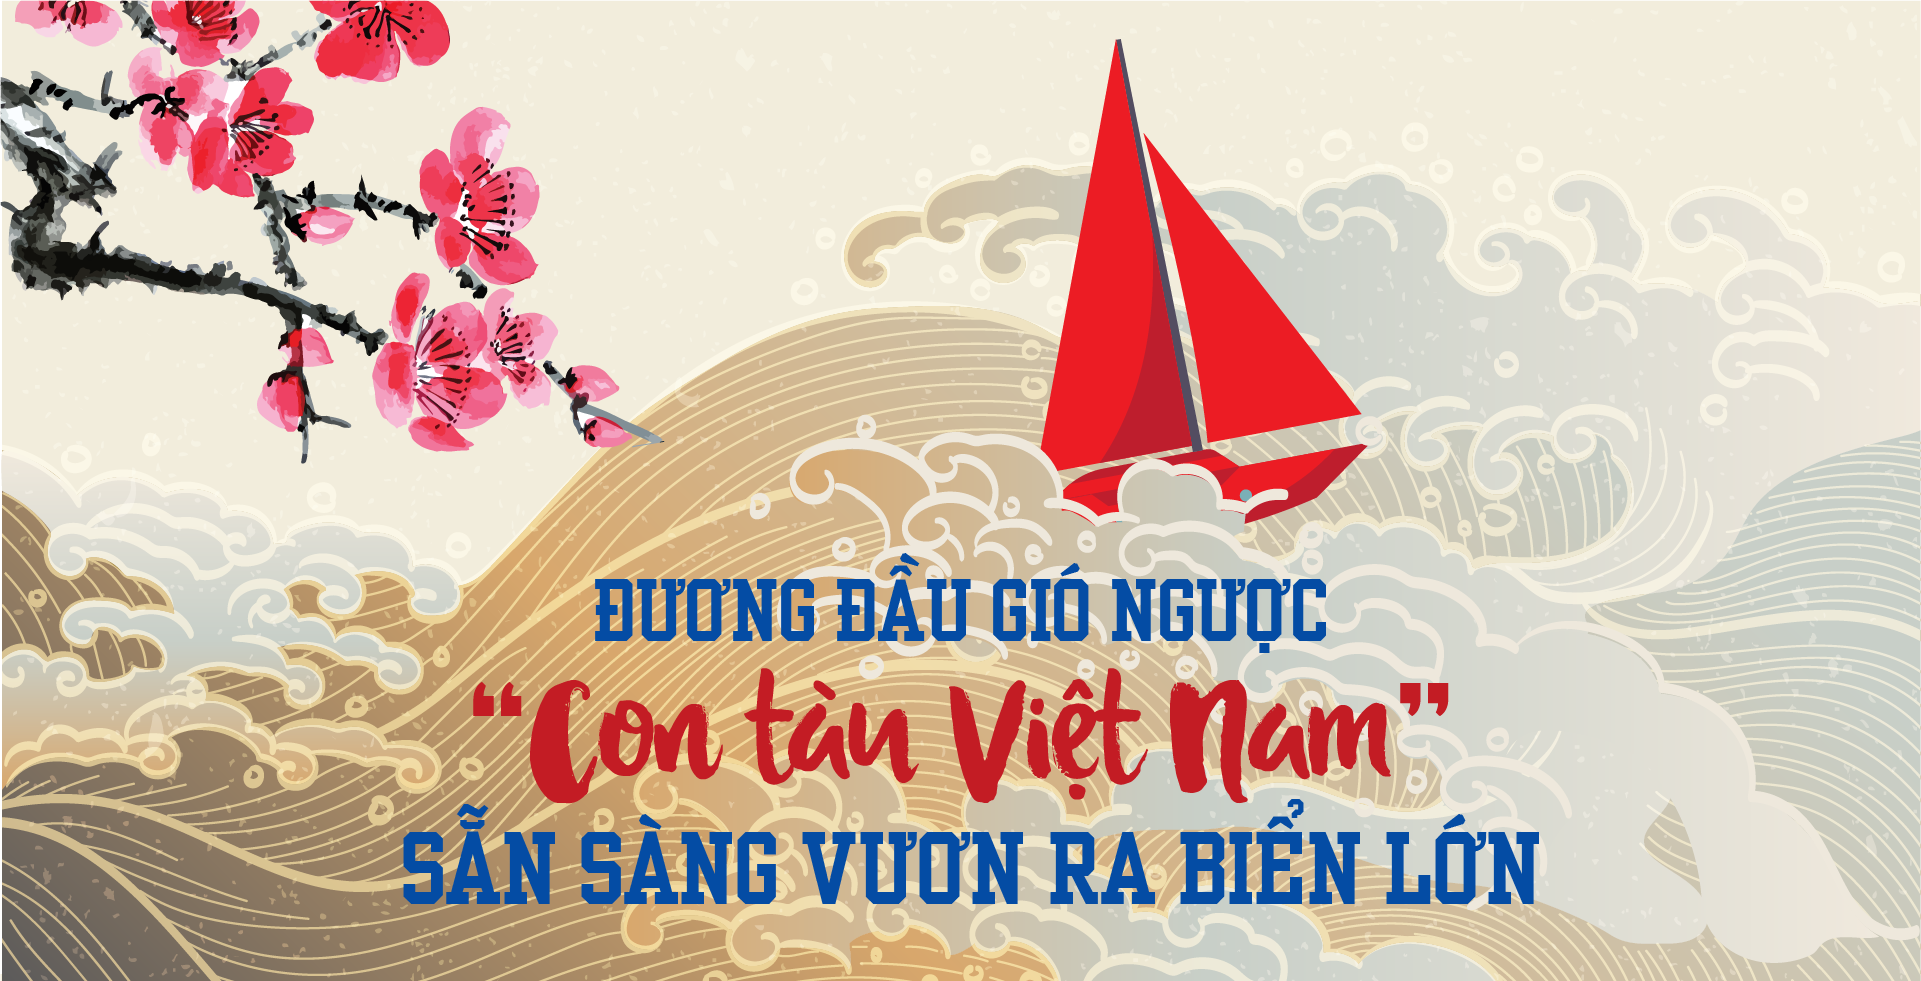 Đương đầu gió ngược “Con tàu Việt Nam” sẵn sàng vươn ra biển lớn   - Ảnh 1